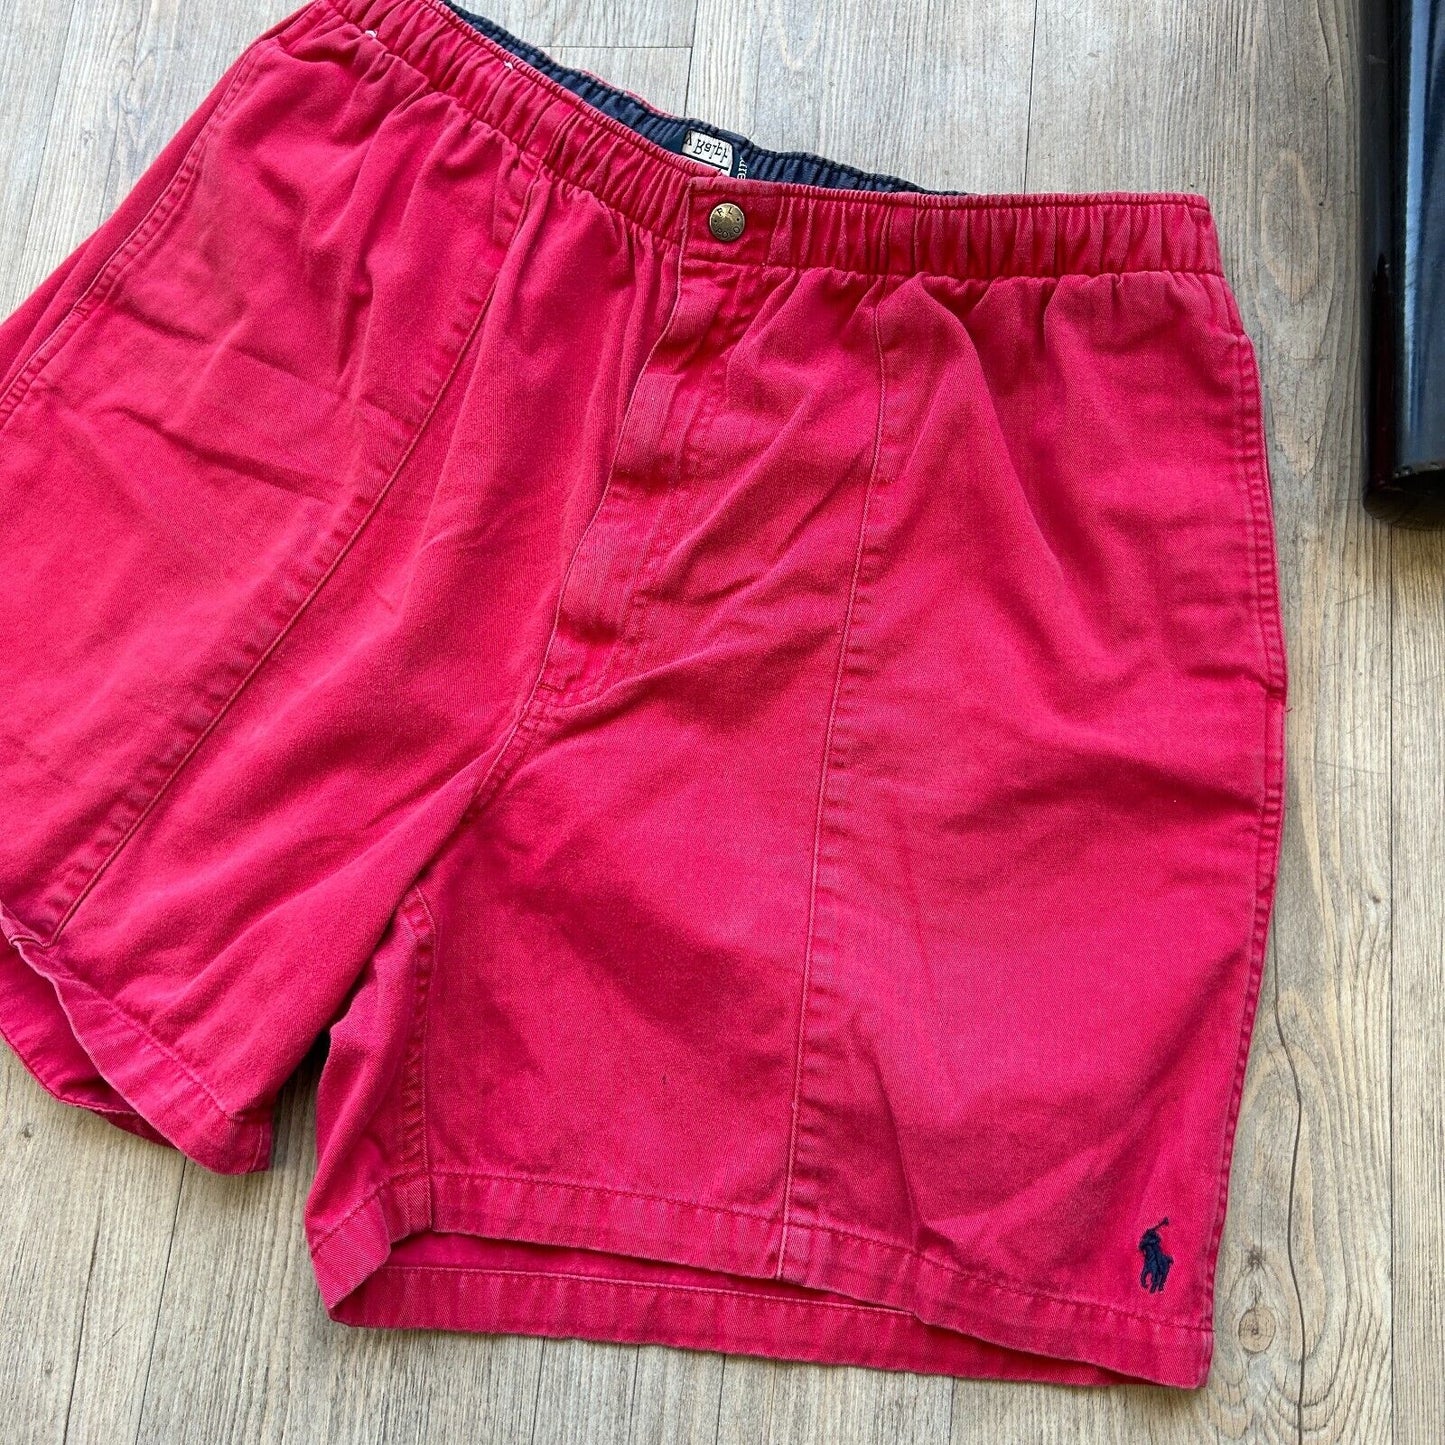 VINTAGE | POLO Ralph Lauren Red Cotton Canvas Shorts sz XL